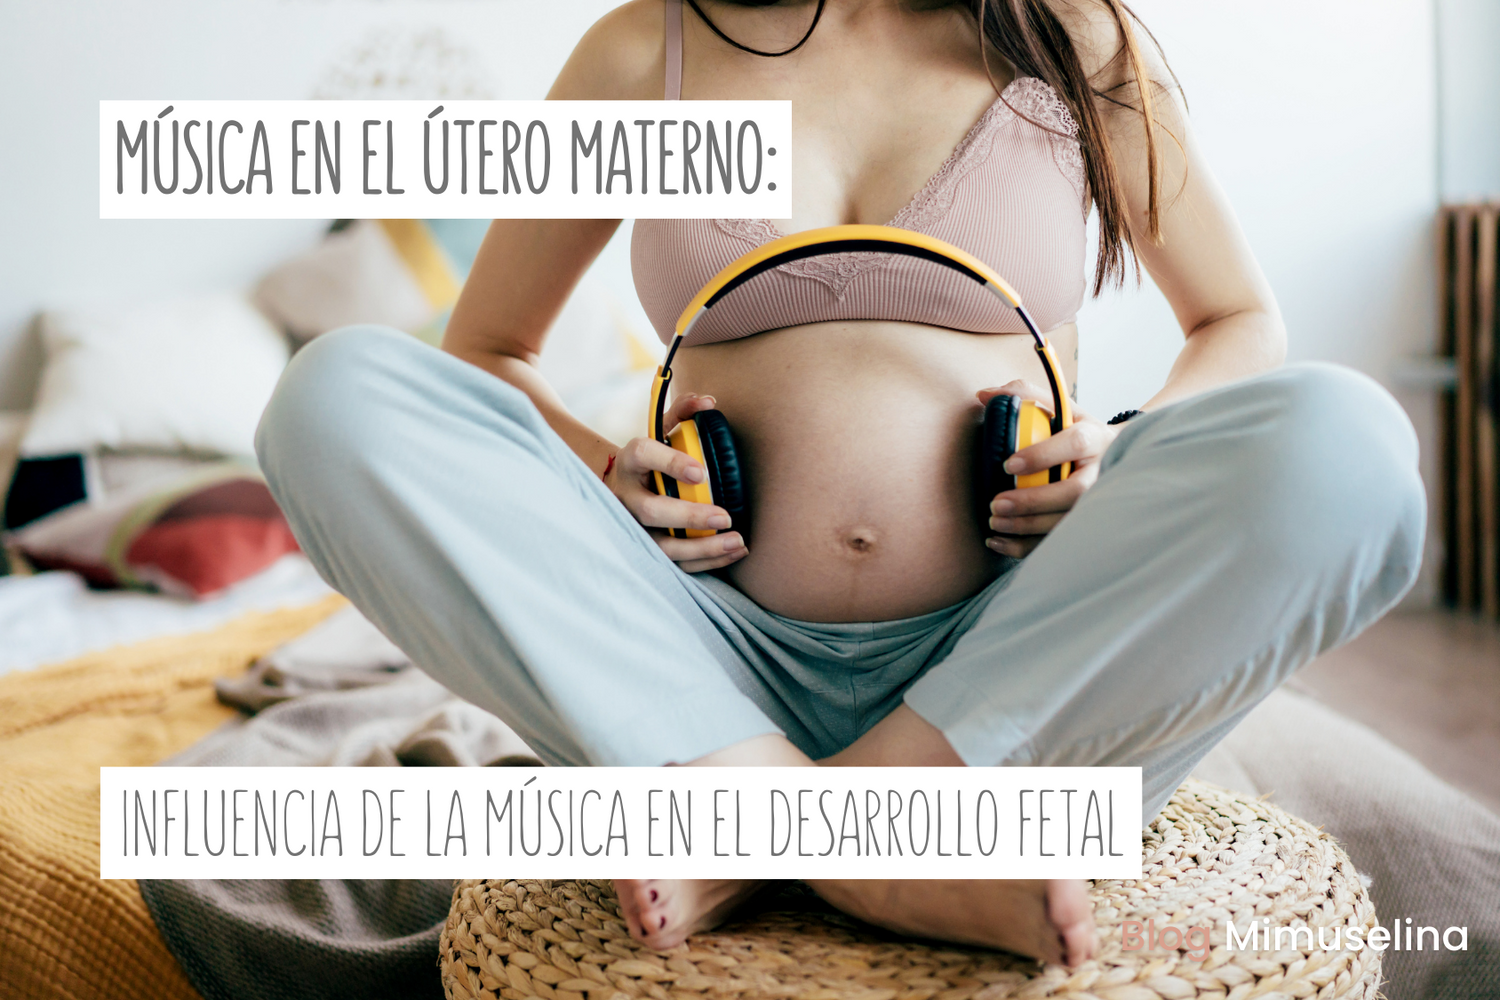 Música en el útero materno: influencia y beneficios para el desarrollo fetal